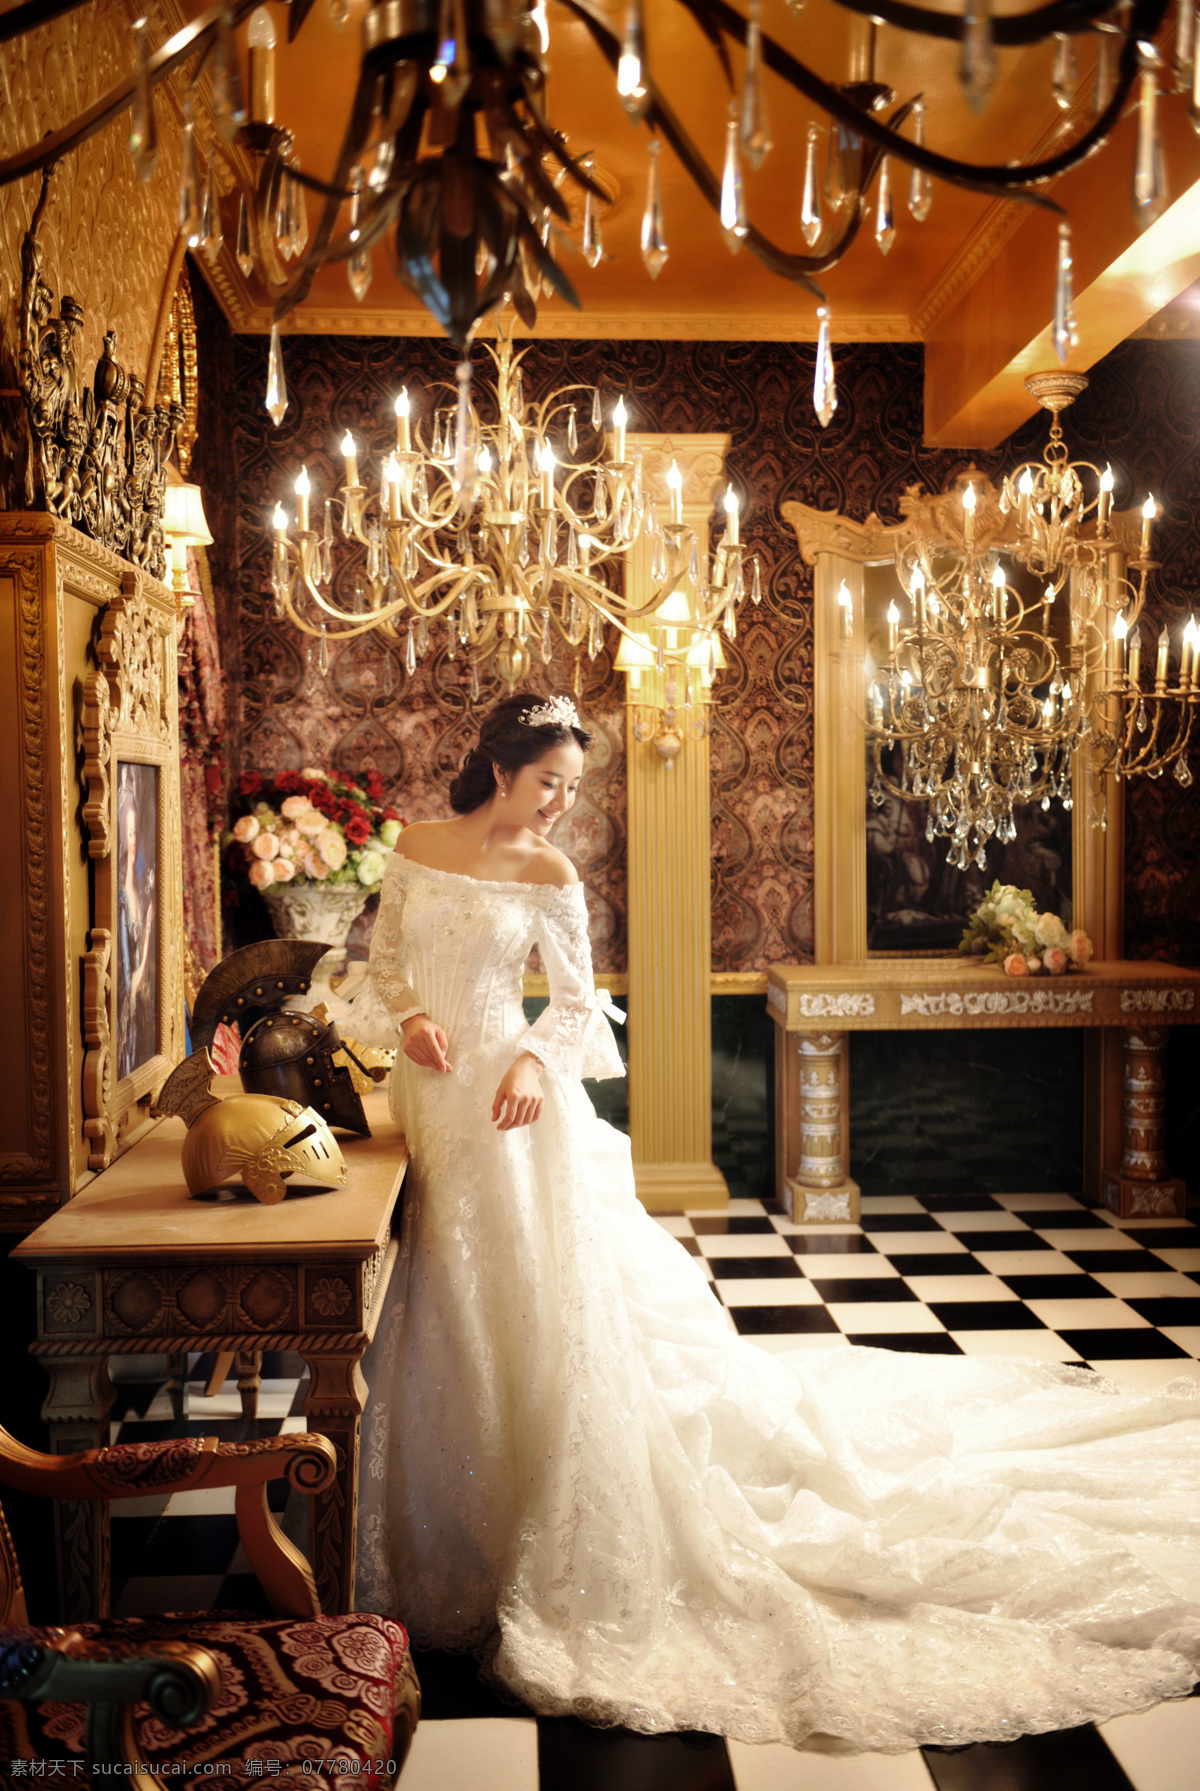 欧式 婚纱图片 美女 欧式婚纱 人物摄影 人物图库 婚纱 放大 唯 爱 盛典 家居装饰素材